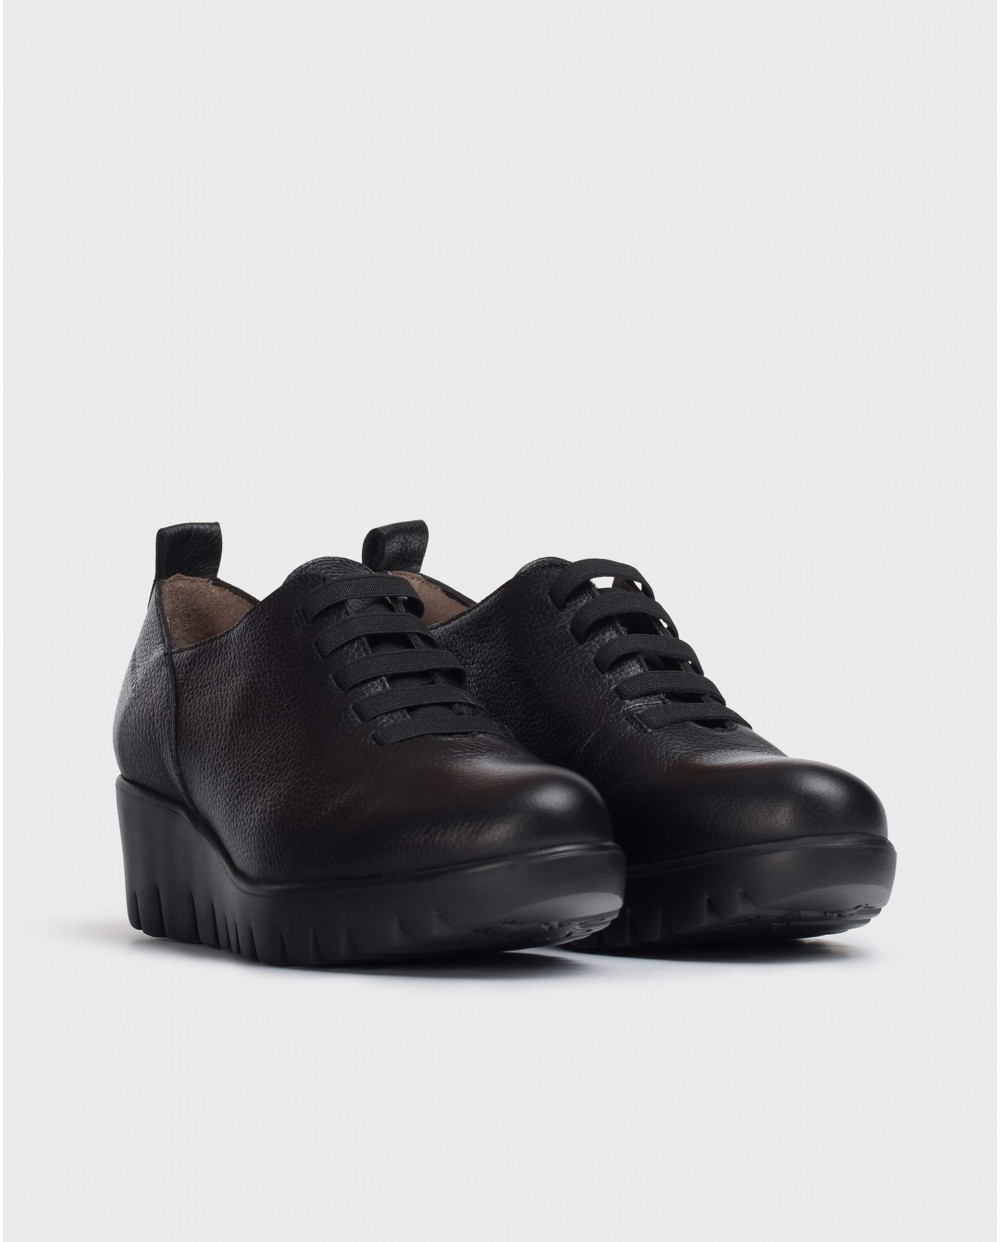 Wonders-Wedges-Soft Black leather Sneaker